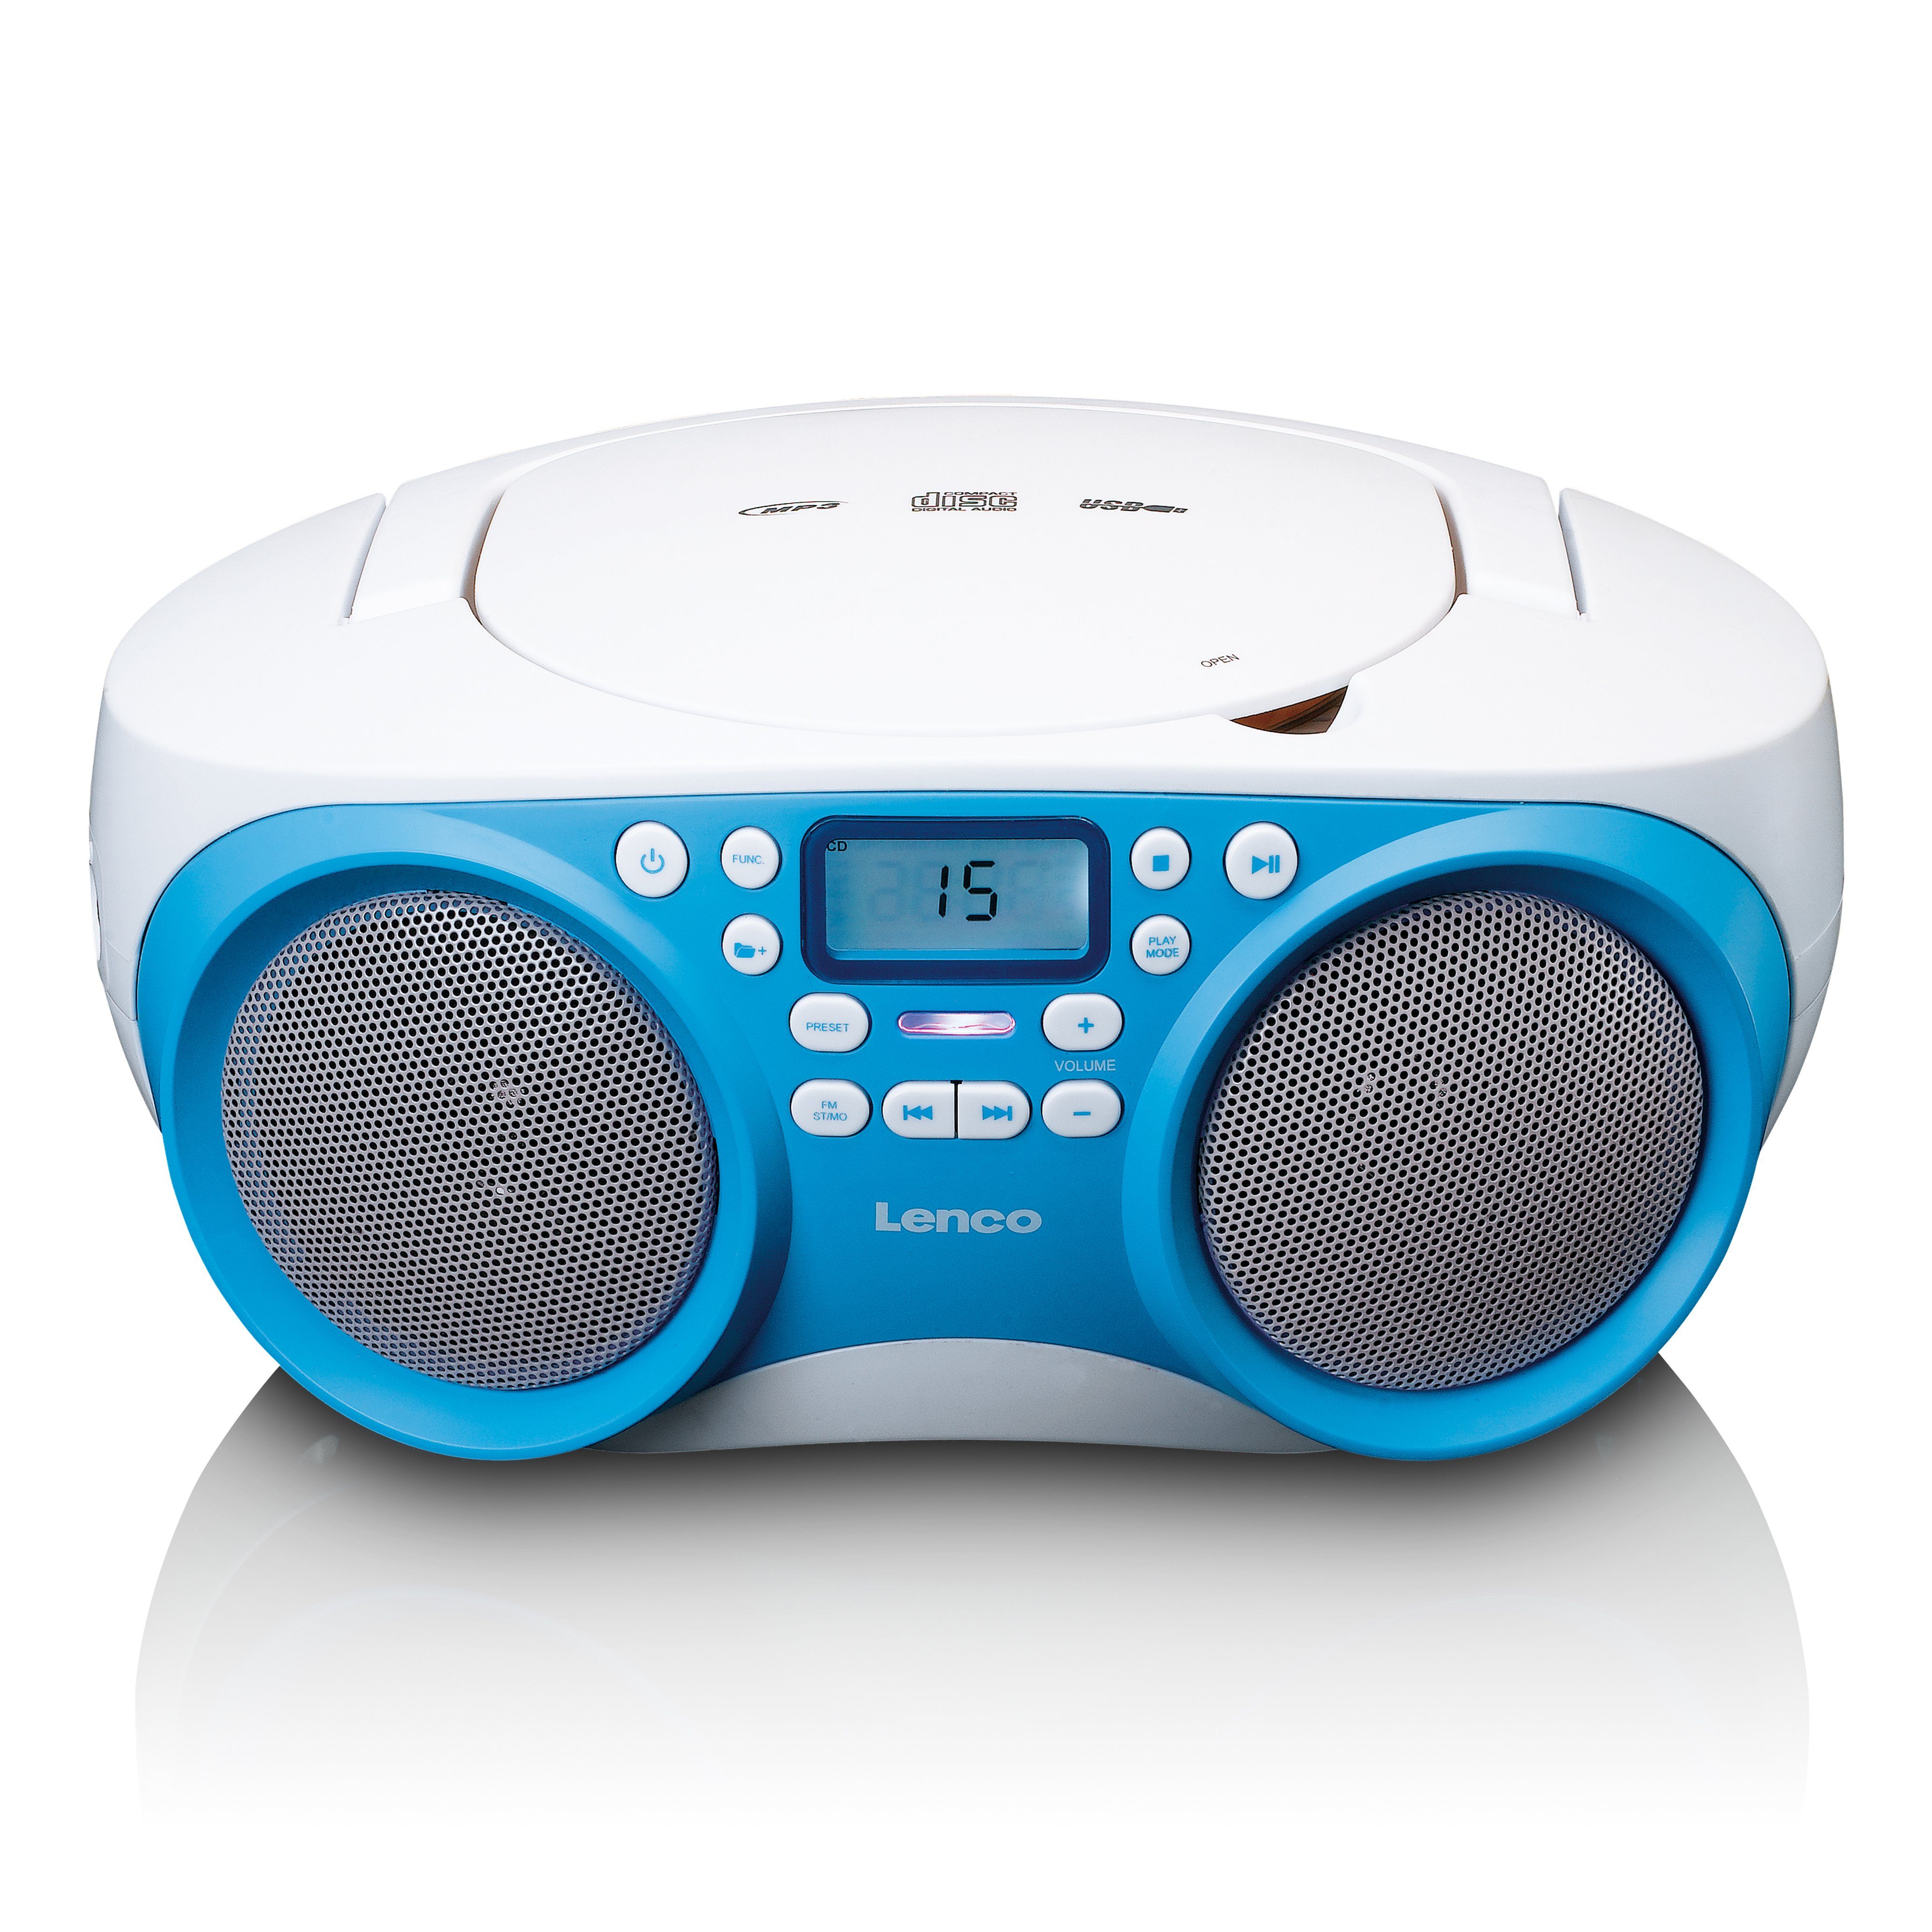 Lenco SCD-301BU CD-Radiorecorder (FM) Weiß-Blau | CD-Radiorecorder